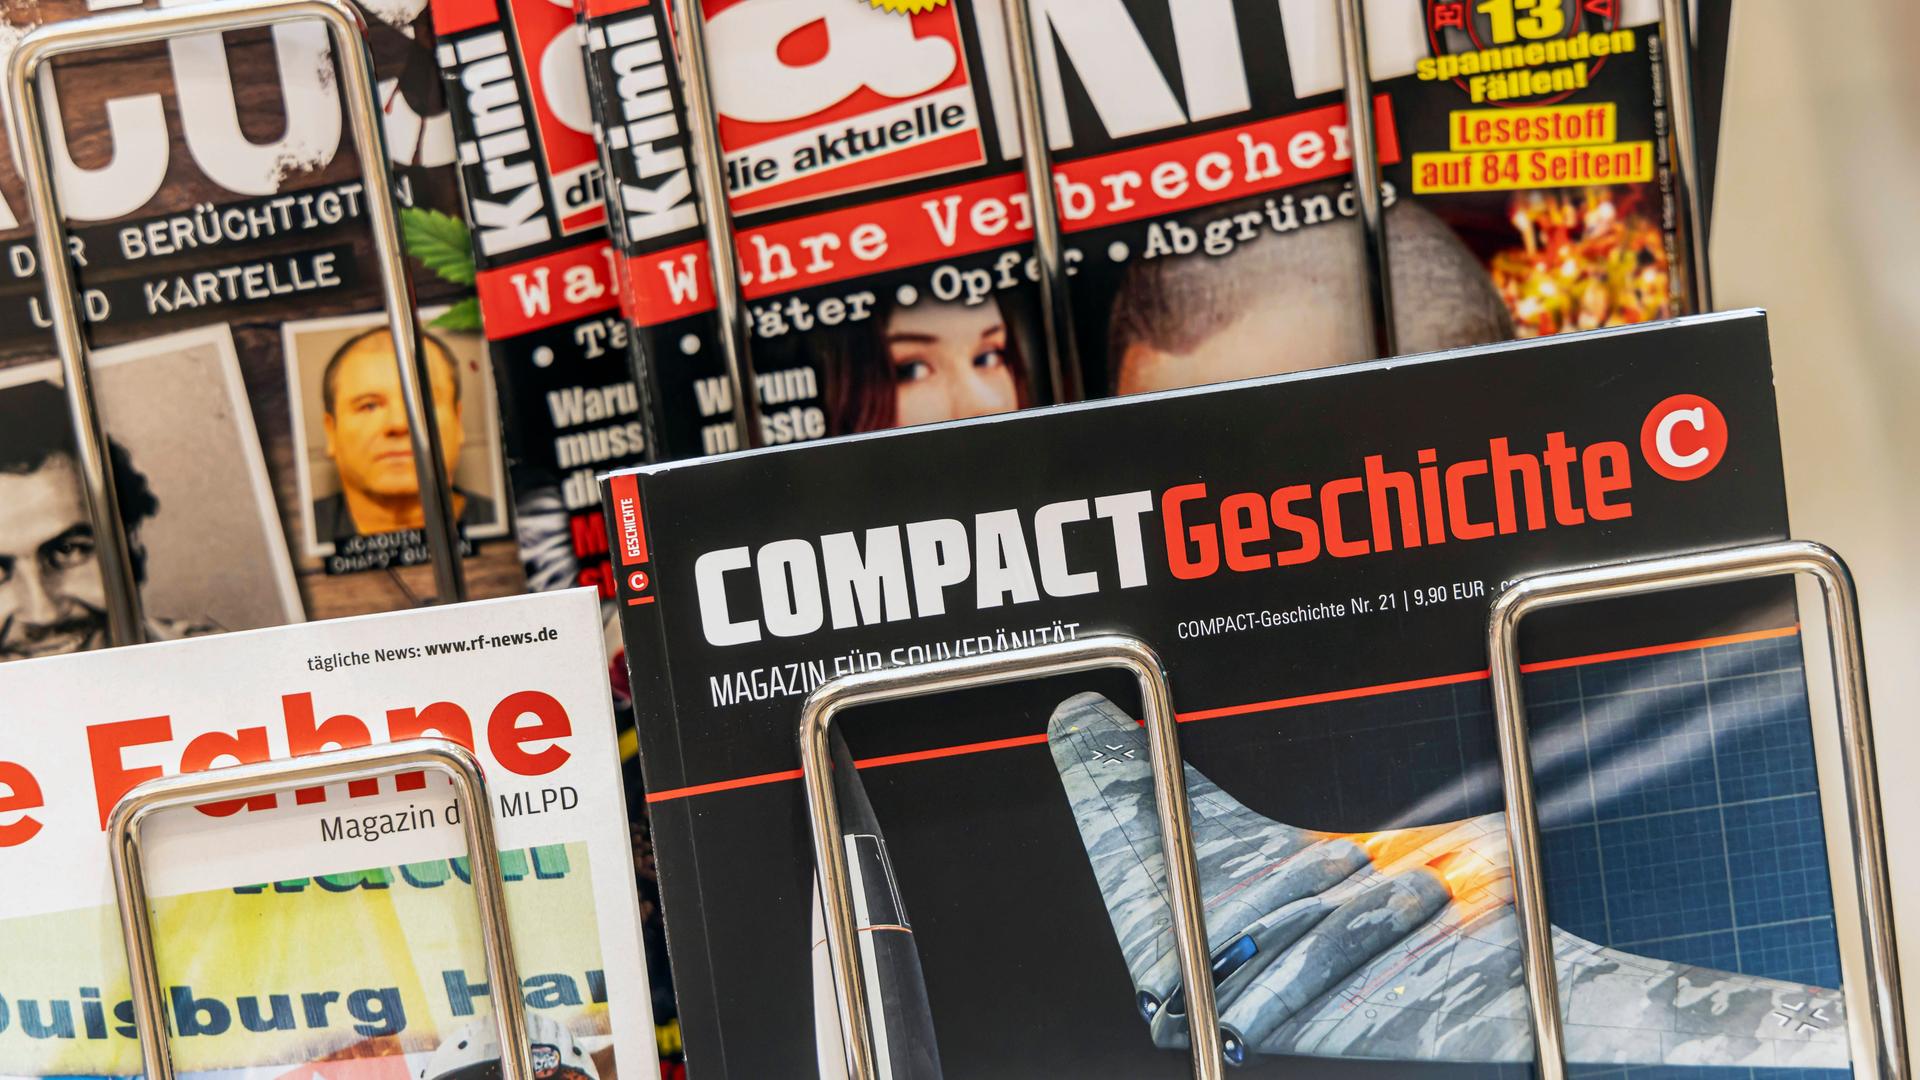 Zeitschrift "Compact Geschichte" im Bahnhofsbuchhandel in Ulm. 